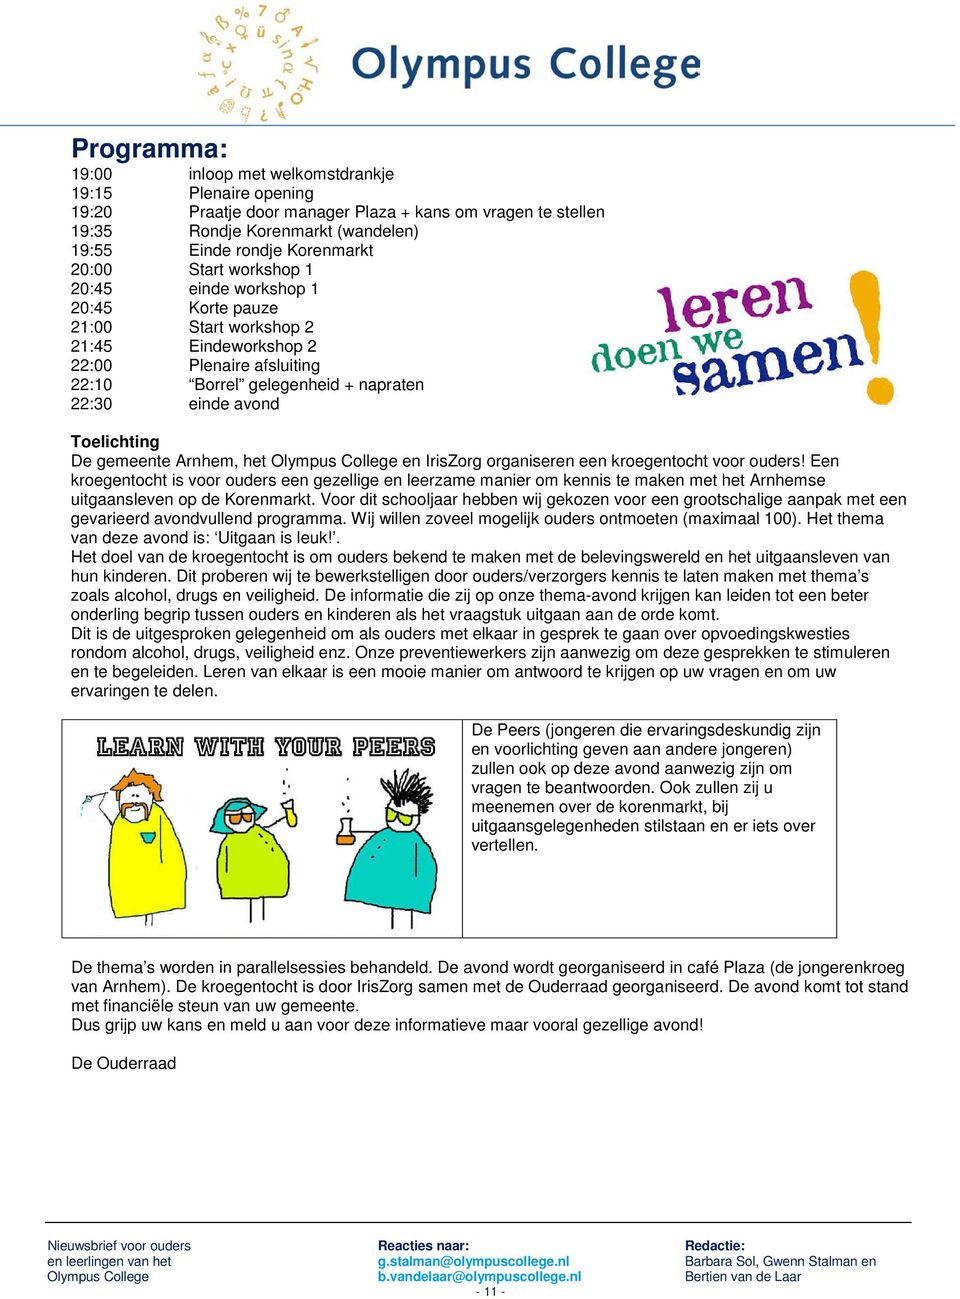 gemeente Arnhem, het Olympus College en IrisZorg organiseren een kroegentocht voor ouders!